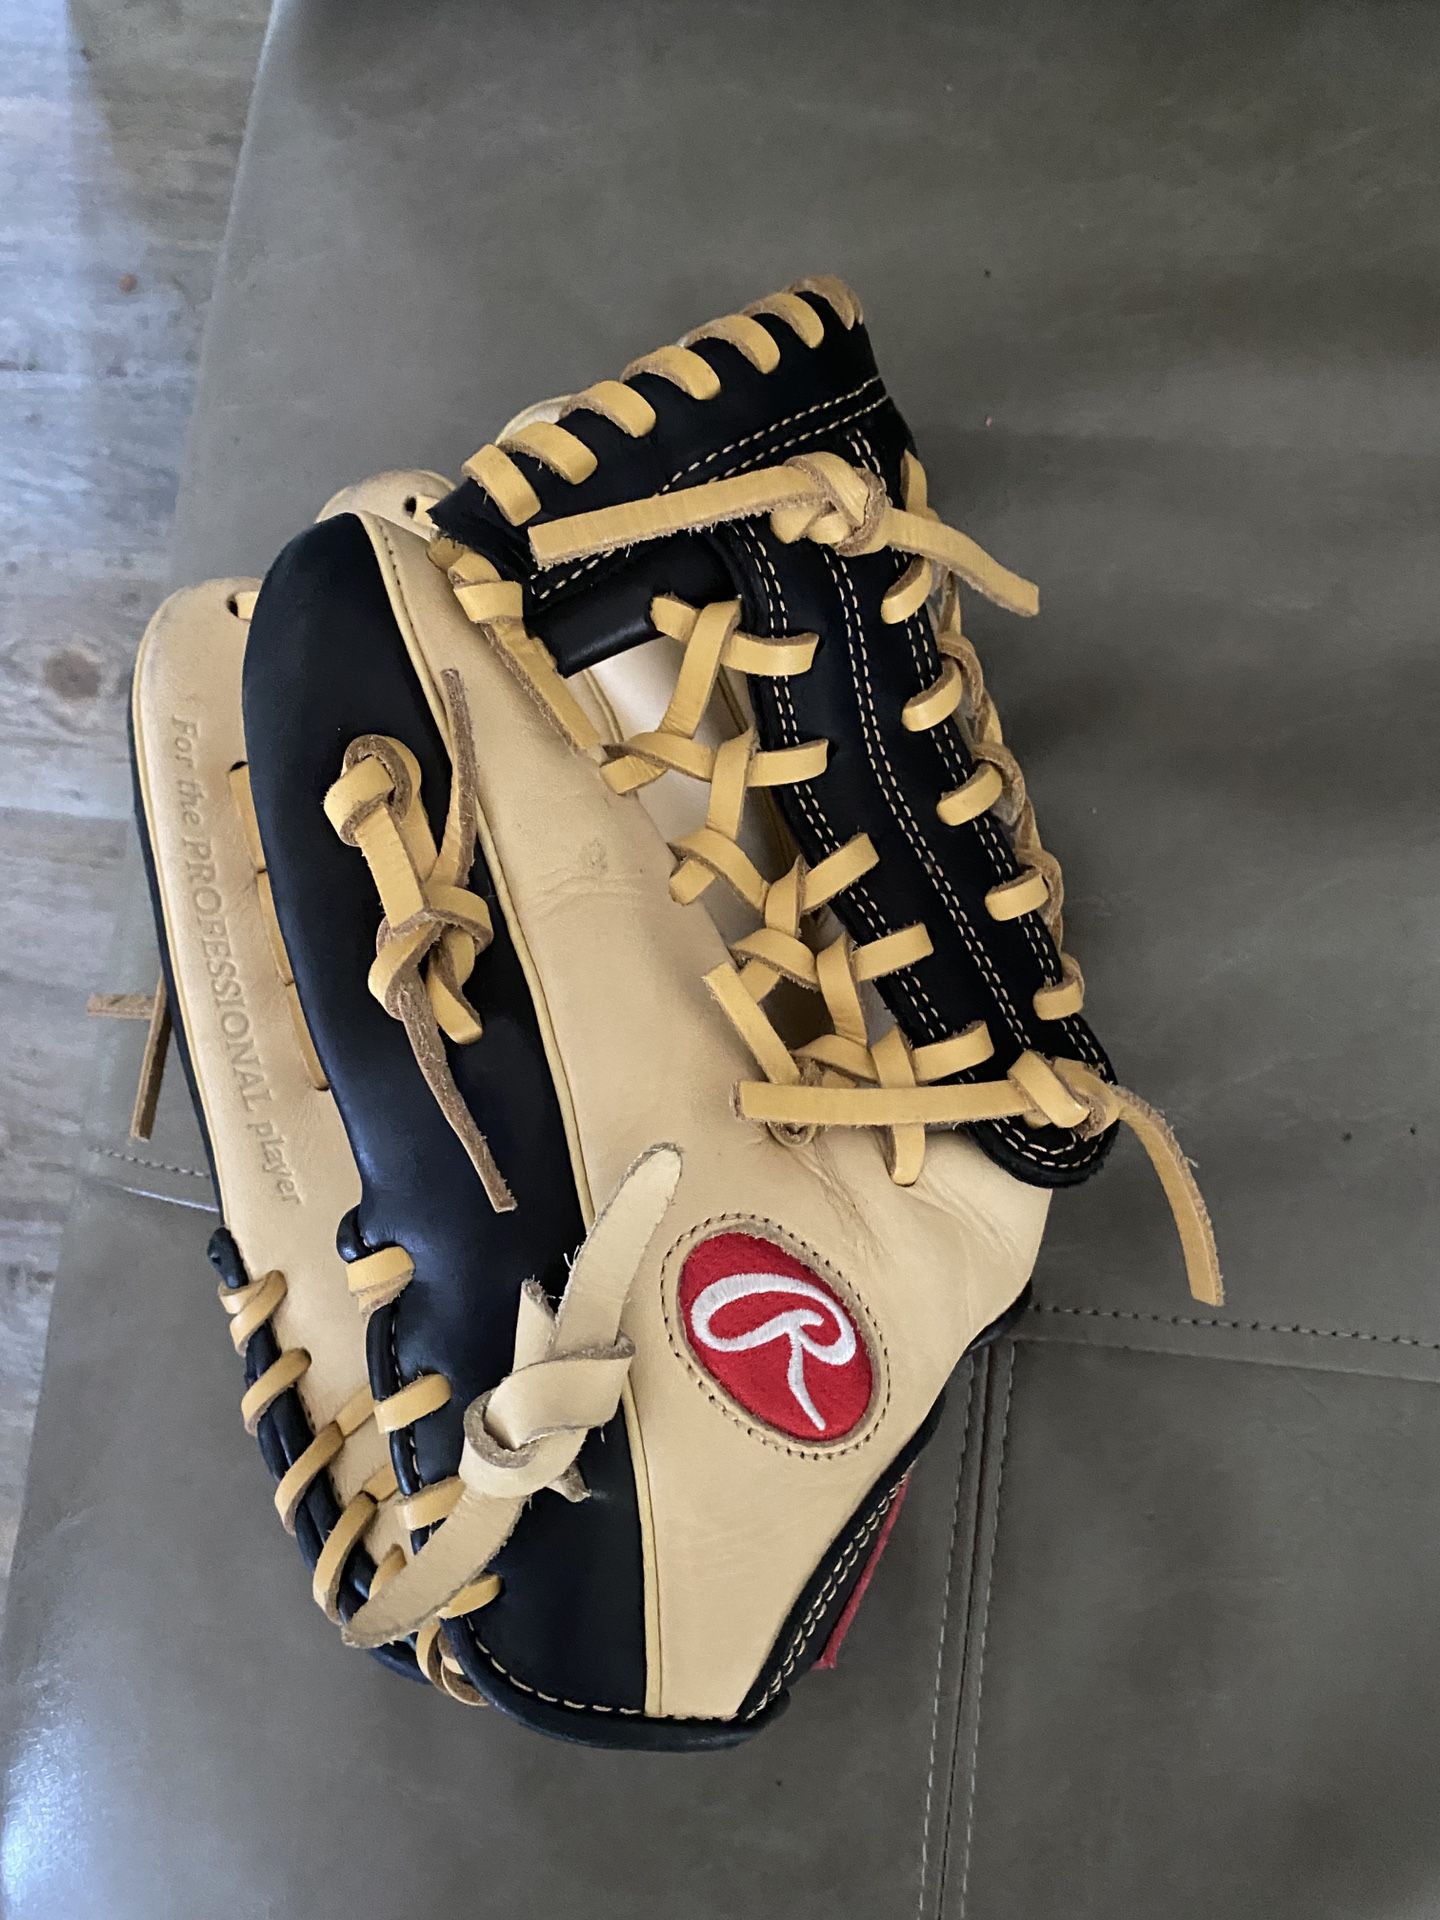 Rawlings Baseball Glove Brand new